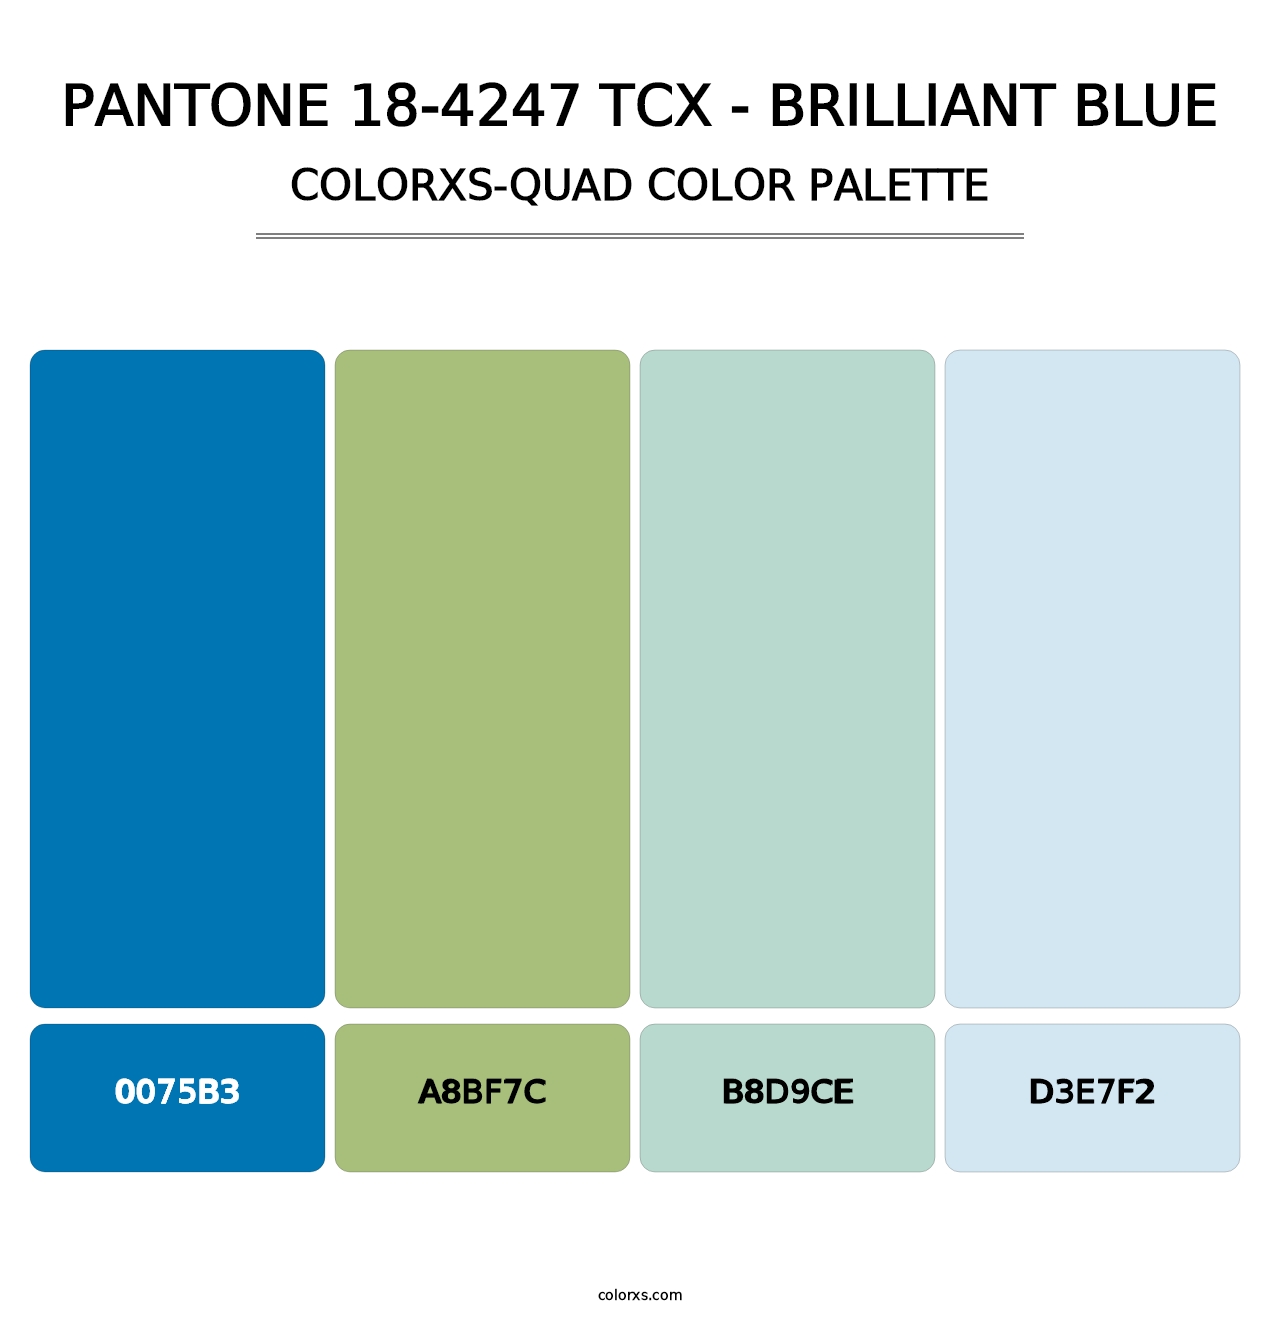 PANTONE 18-4247 TCX - Brilliant Blue - Colorxs Quad Palette